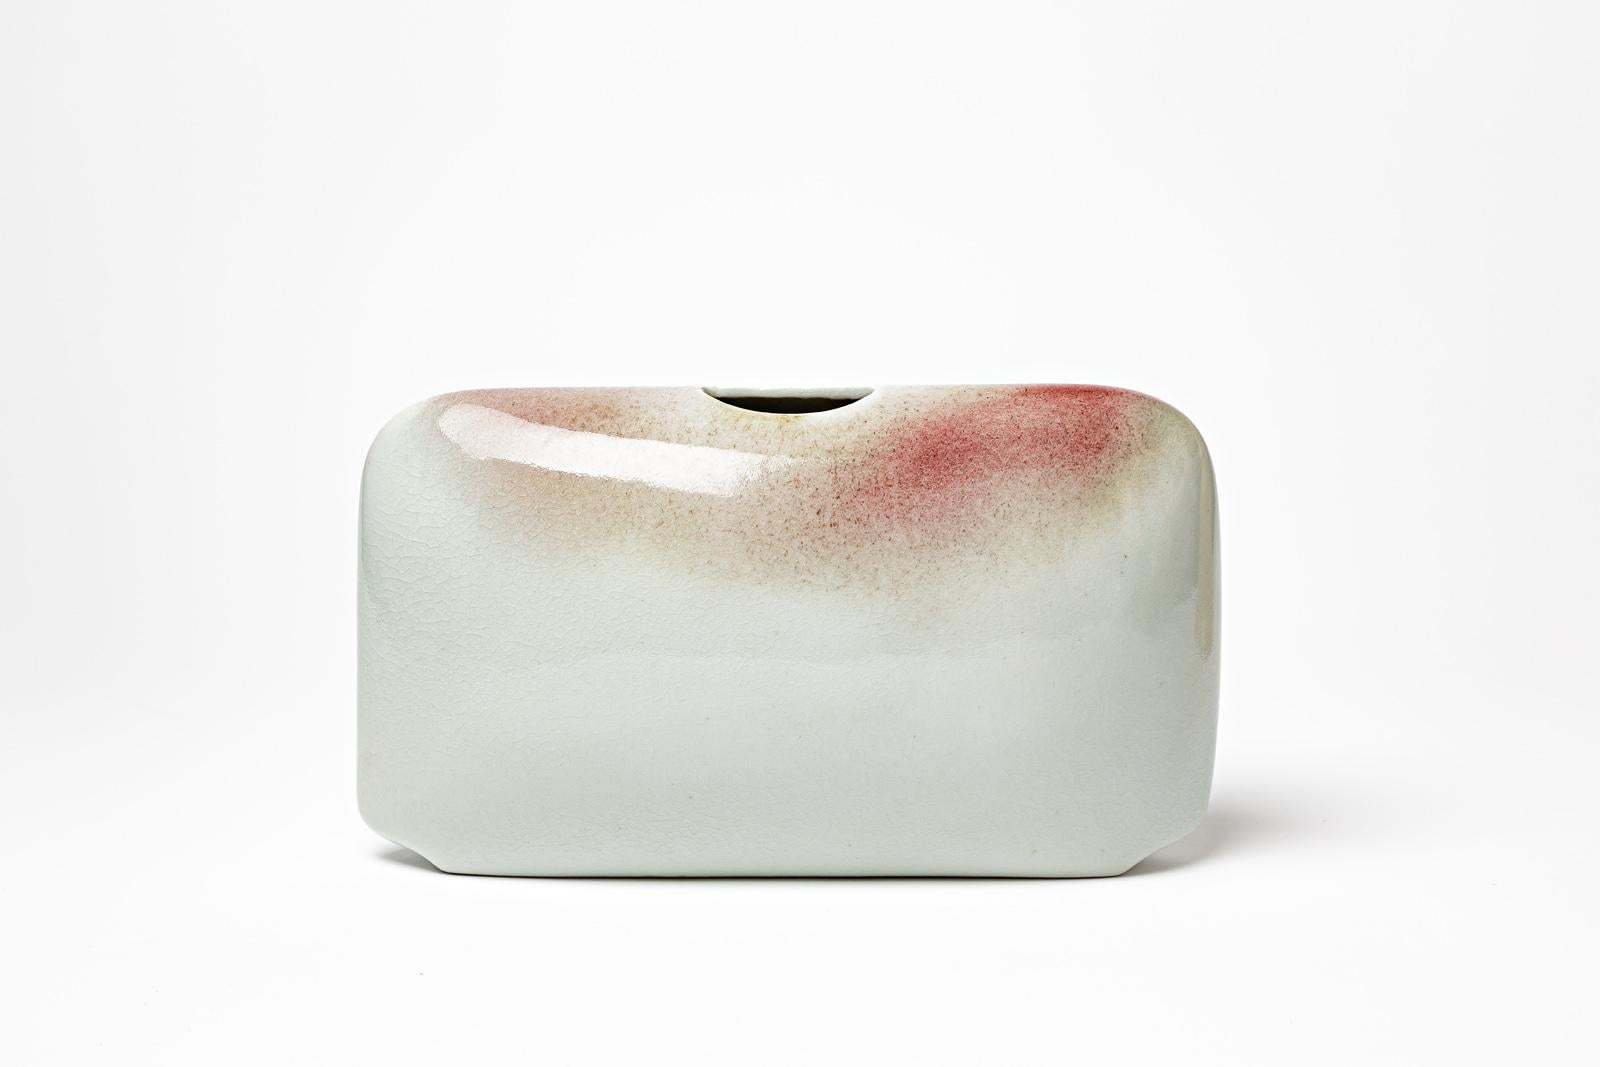 Virebent - 1970

Handgefertigte Keramikvase aus Porzellan um 1970

Weiße und rote keramische Glasurfarben

Original perfekter Zustand

Höhe 17 cm 
Groß 27 cm